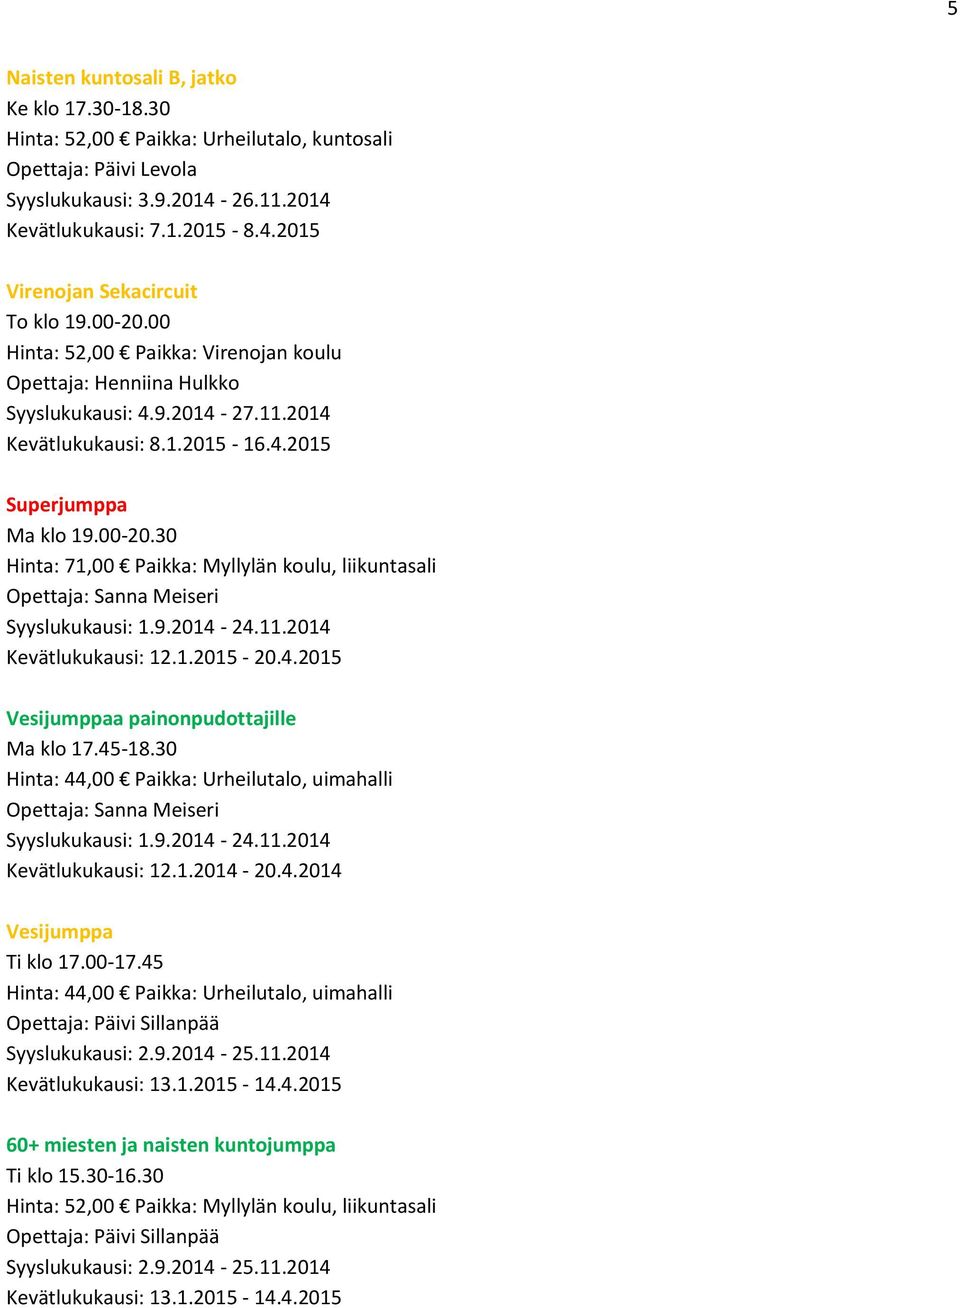 11.2014 Kevätlukukausi: 12.1.2015-20.4.2015 Vesijumppaa painonpudottajille Ma klo 17.45-18.30 Hinta: 44,00 Paikka: Urheilutalo, uimahalli Opettaja: Sanna Meiseri Syyslukukausi: 1.9.2014-24.11.2014 Kevätlukukausi: 12.1.2014-20.